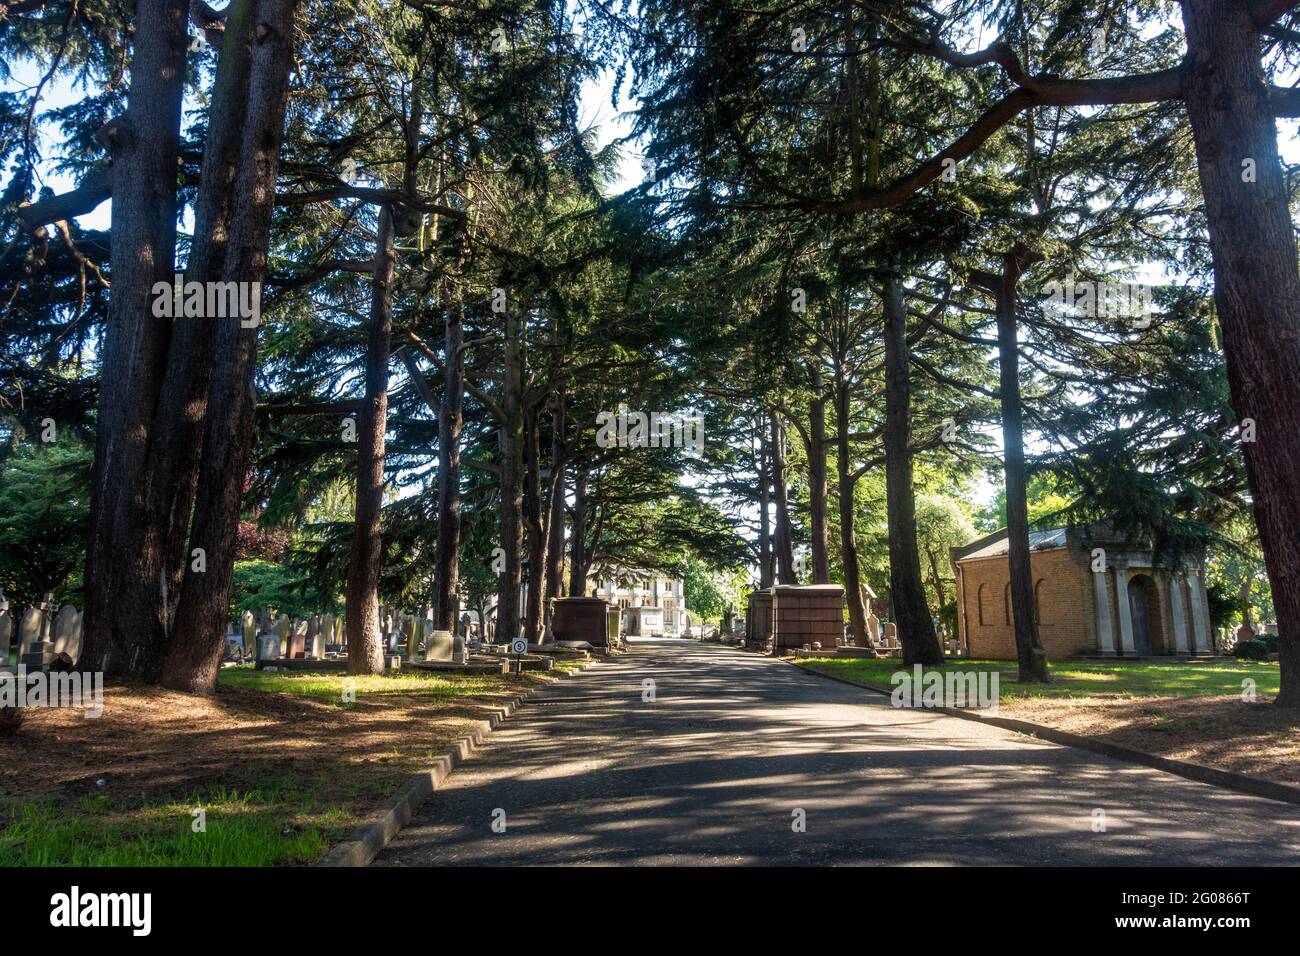 La strada che conduce al cimitero di Hanwell è fiancheggiata da alberi alti ed è tranquilla e pacifica. Foto Stock